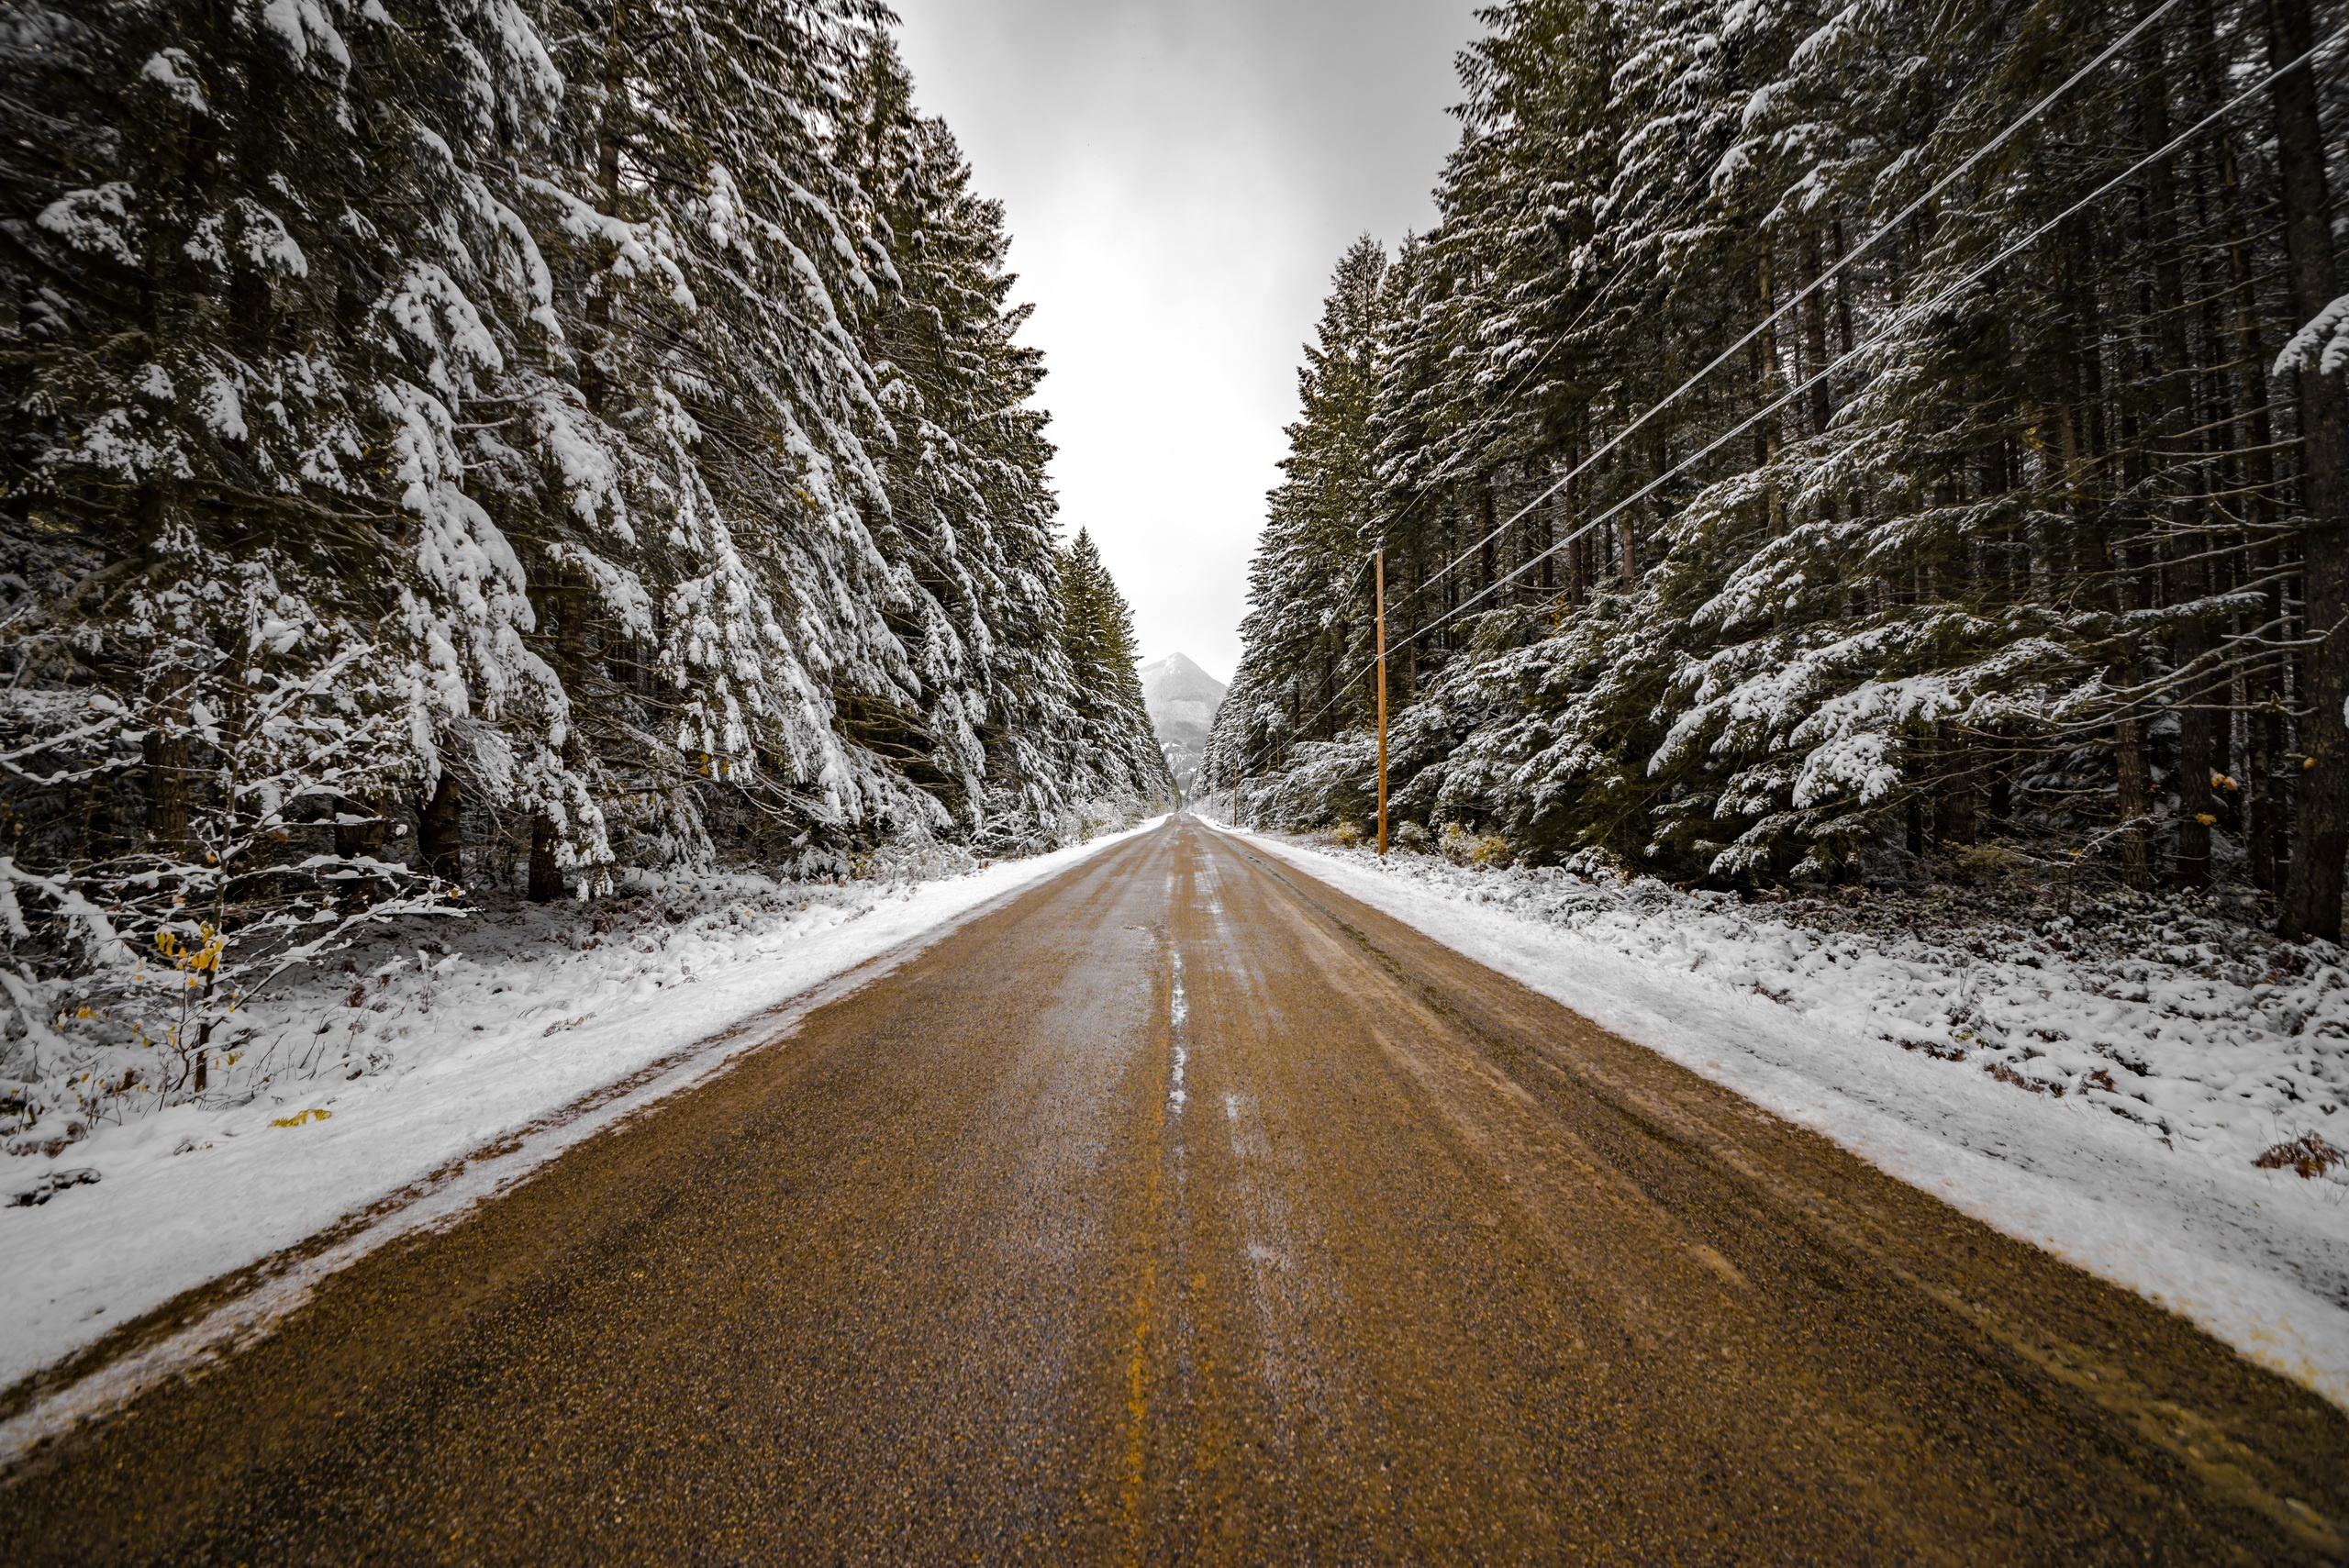 Тема зимней дороги. Зима дорога. Заснеженная дорога в лесу. Зимняя дорога в лесу. Зимняя трасса.